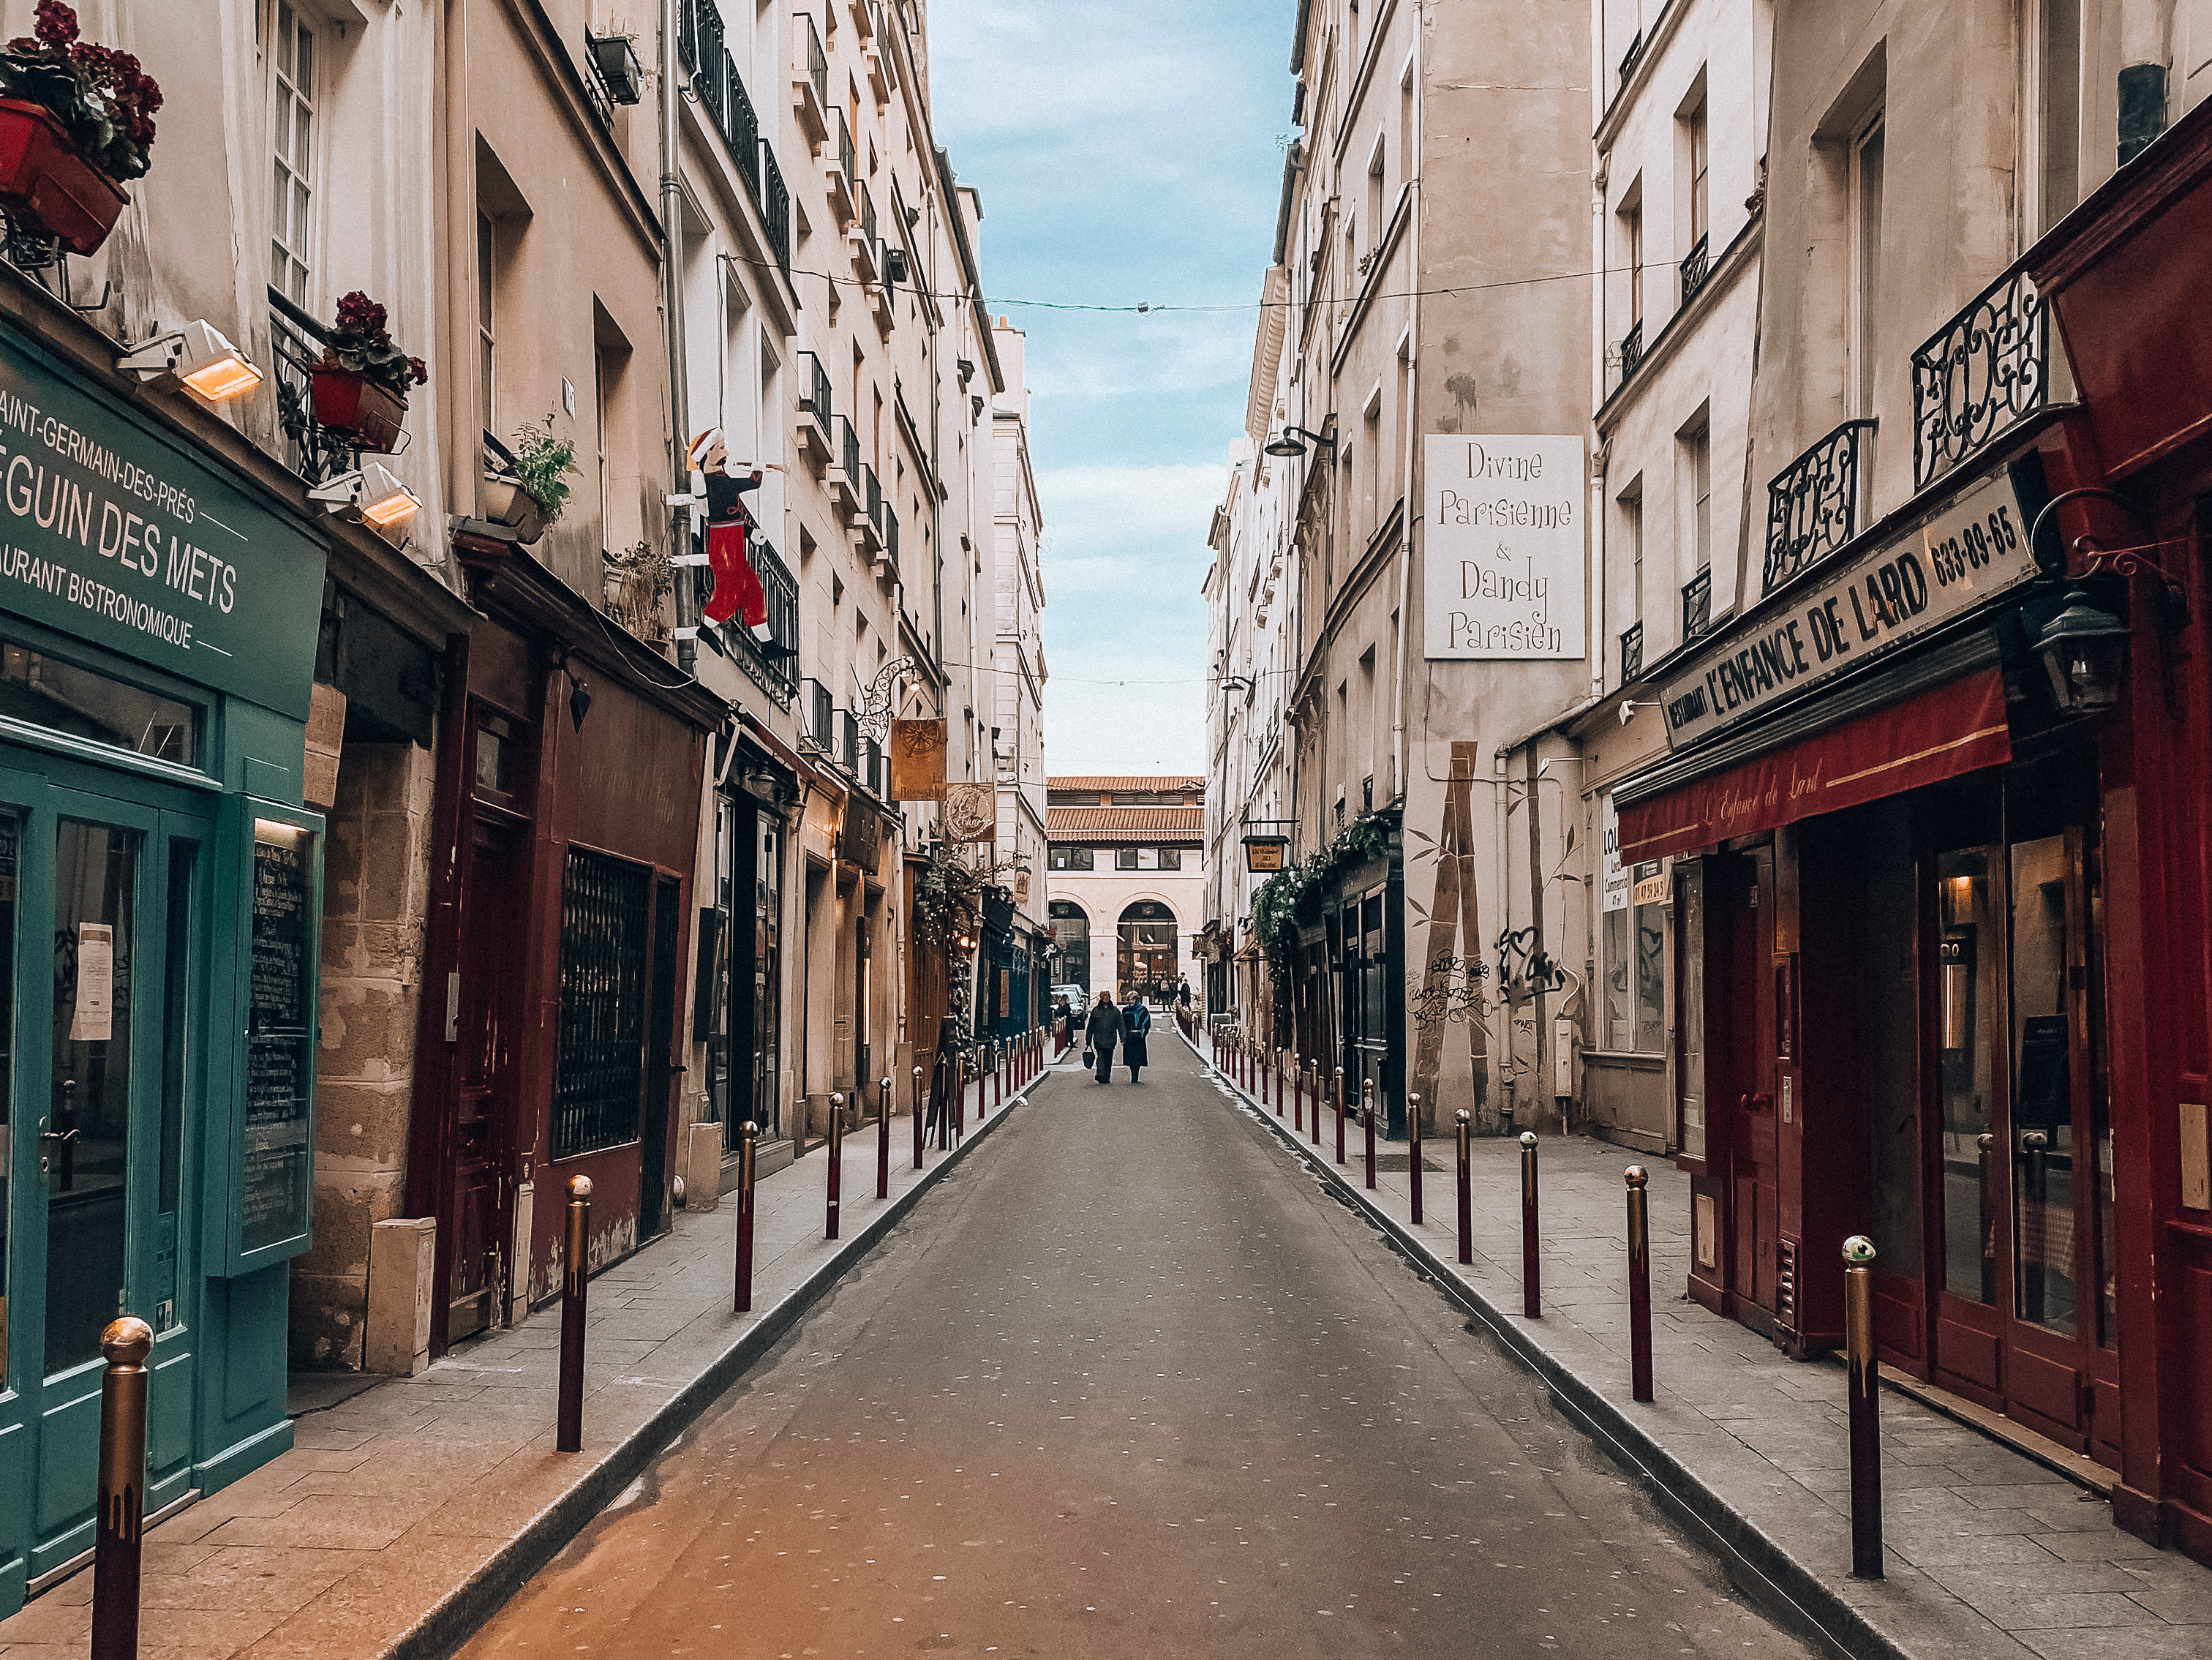 Streets of Saint-Germain-des-Pres. Photo: Kellie Paxian